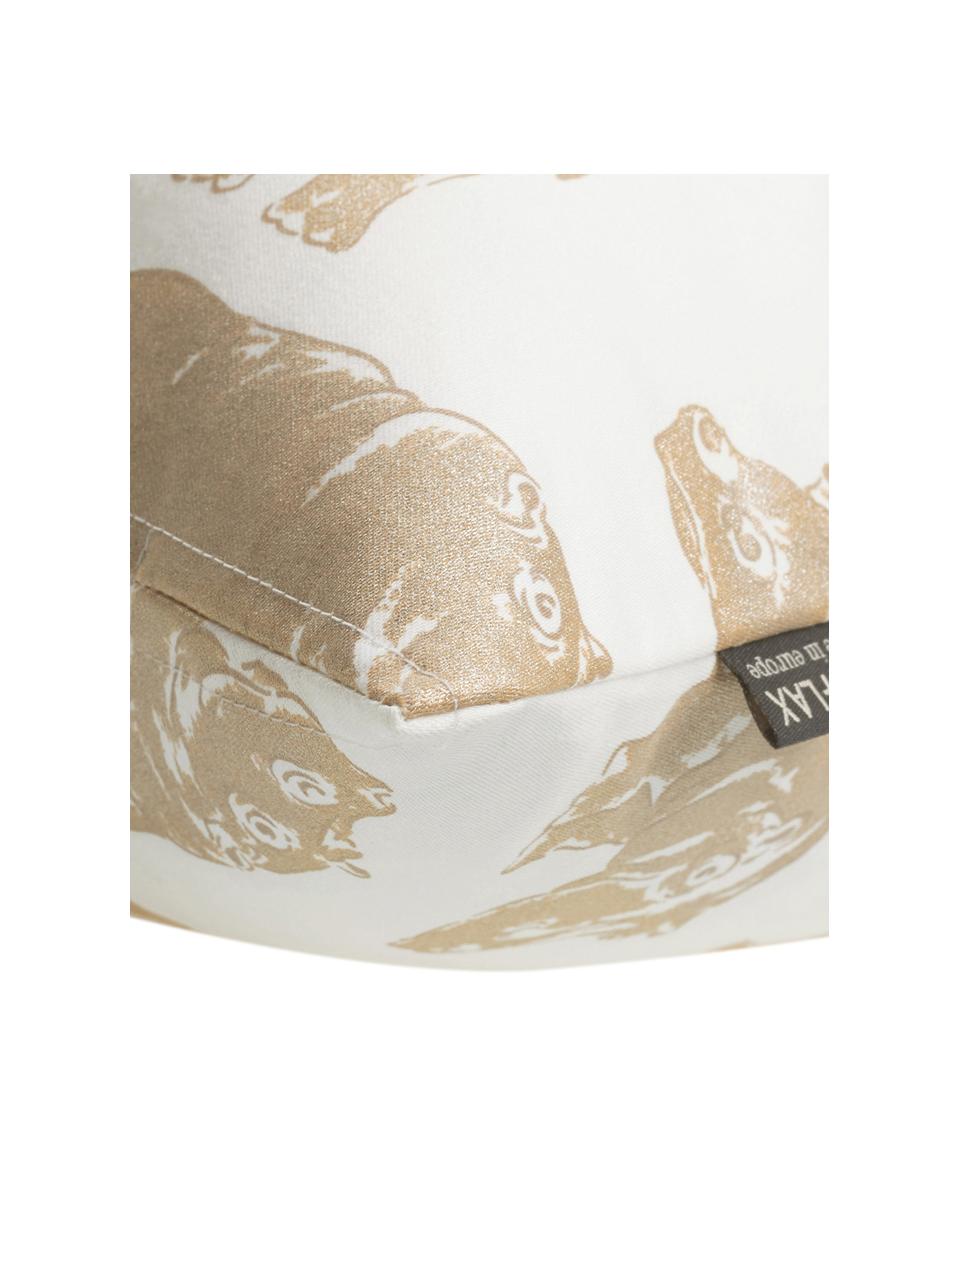 Kissenhülle Hippo mit Tierdruck in Gold/Creme, Baumwolle, Weiß, Goldfarben, 40 x 40 cm